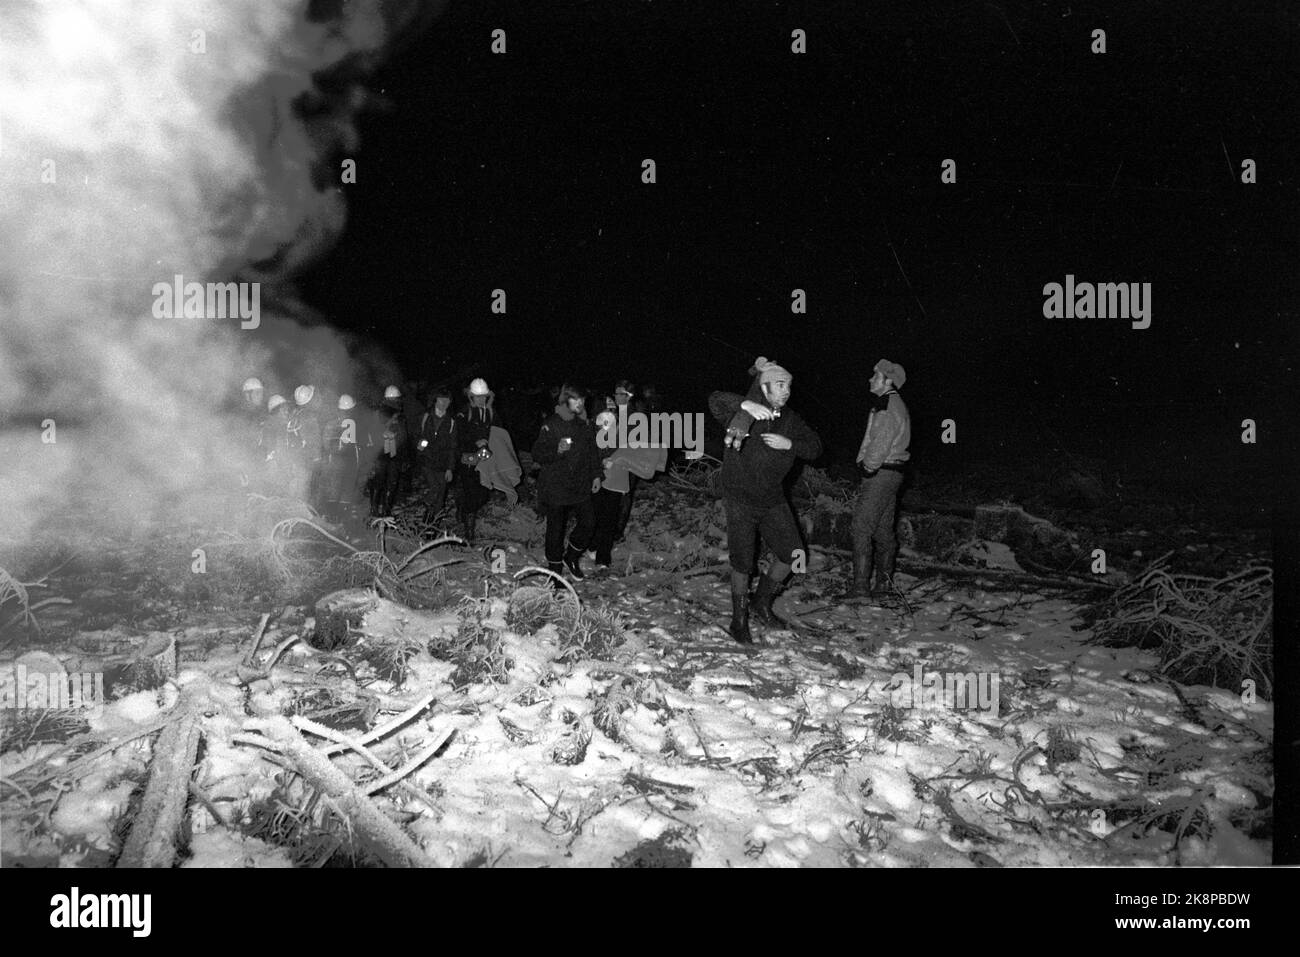 Asker 19721223 der Flugzeugabsturz in Vestmarka am kleinen Heiligabend, bei dem ein Fokker Fellowship Fly von Braathens Safe abstürzte und 40 Menschen umkamen. Die ersten Hilfskräfte werden durch das brennende Flugzeug gefördert. Foto: NTB / NTB Stockfoto